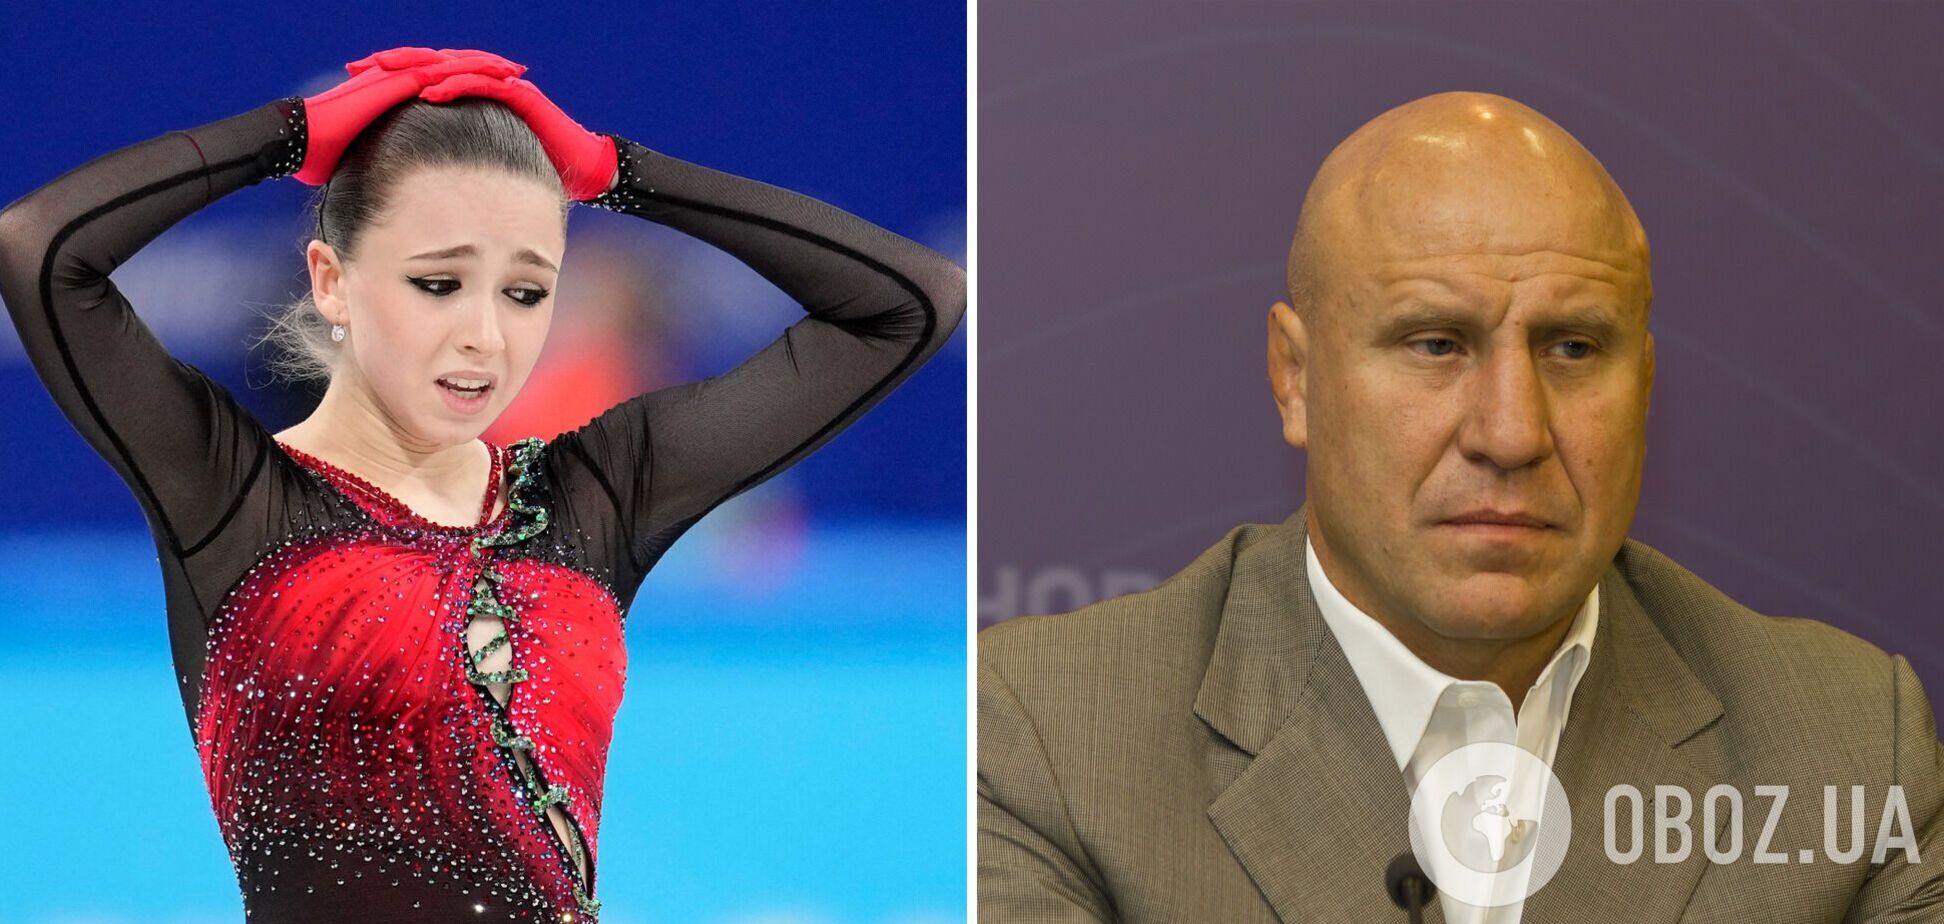 Чемпион ОИ из РФ пожаловался, что мир не проявил 'человеколюбия и сострадания' к Валиевой